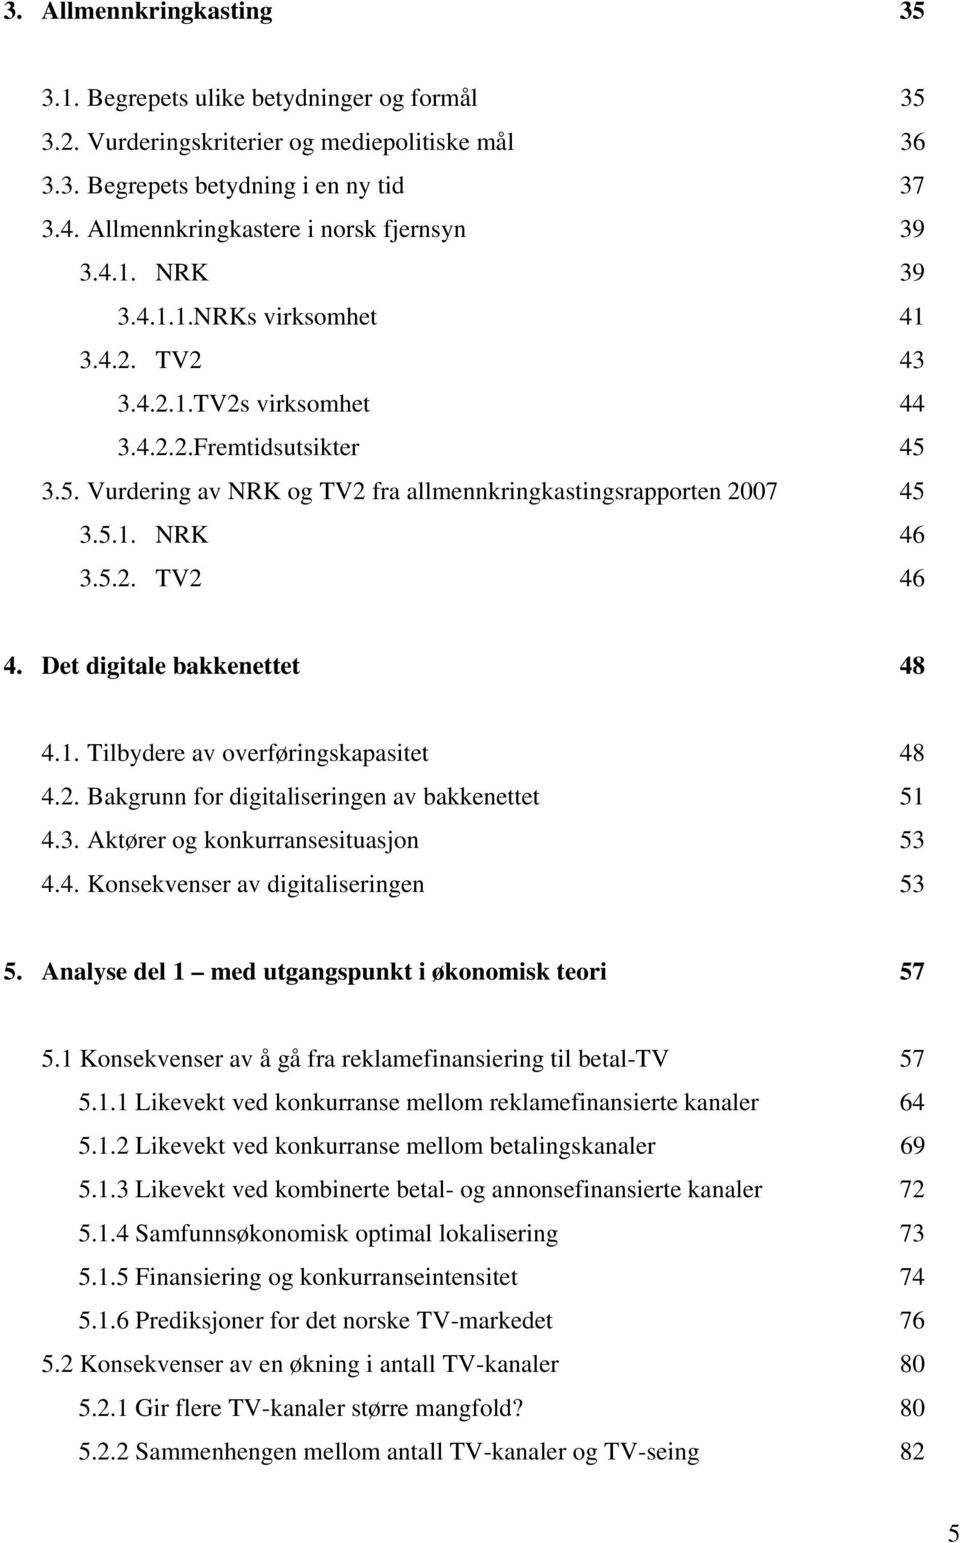 3.5. Vurdering av NRK og TV2 fra allmennkringkastingsrapporten 2007 45 3.5.1. NRK 46 3.5.2. TV2 46 4. Det digitale bakkenettet 48 4.1. Tilbydere av overføringskapasitet 48 4.2. Bakgrunn for digitaliseringen av bakkenettet 51 4.